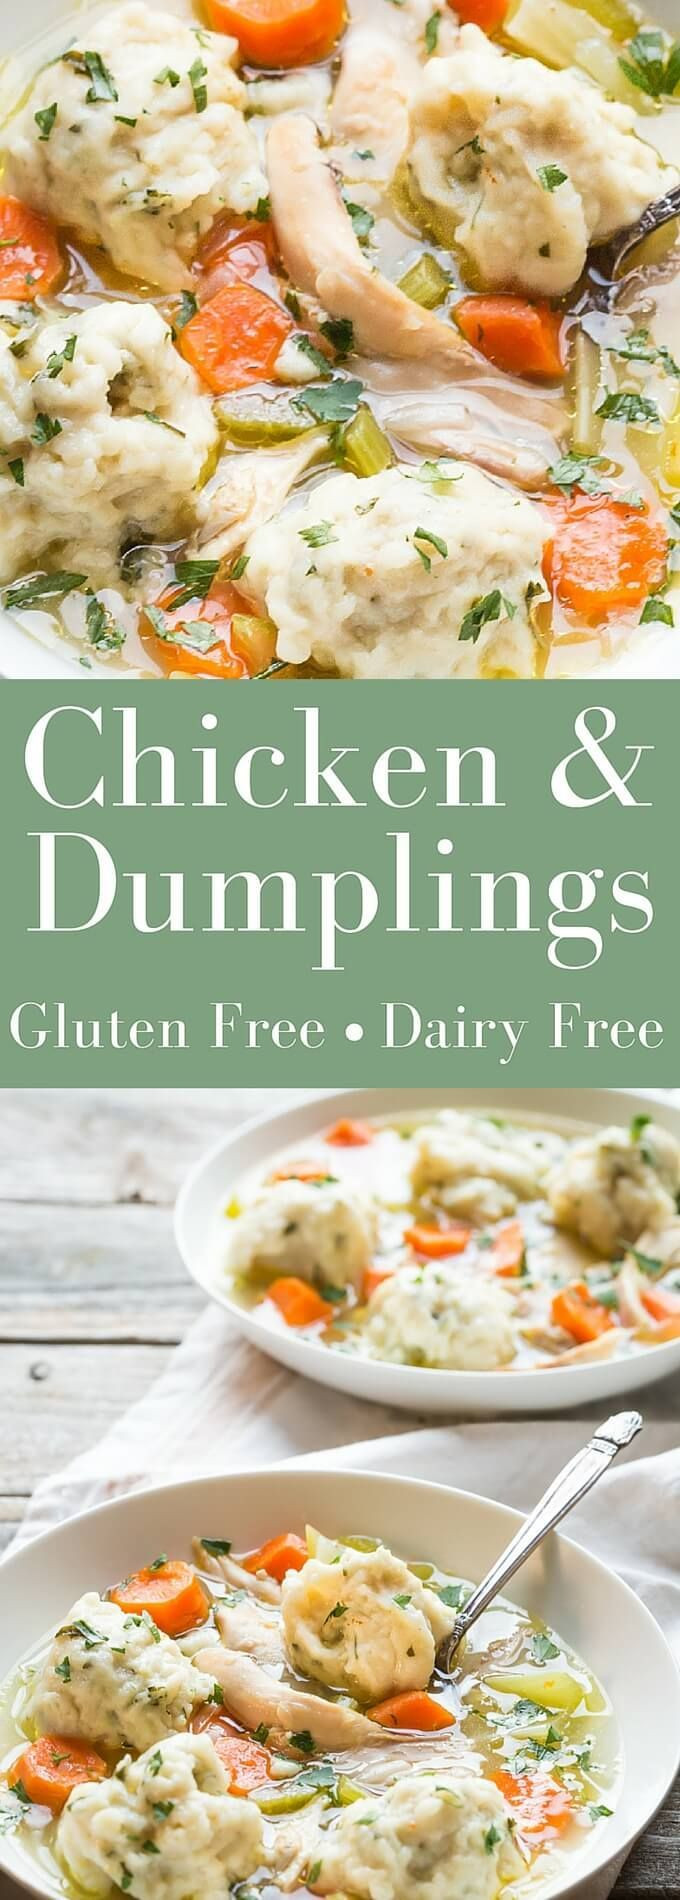 Gluten Free Rolled Dumplings
 Best Ever Gluten Free Chicken and Dumplings